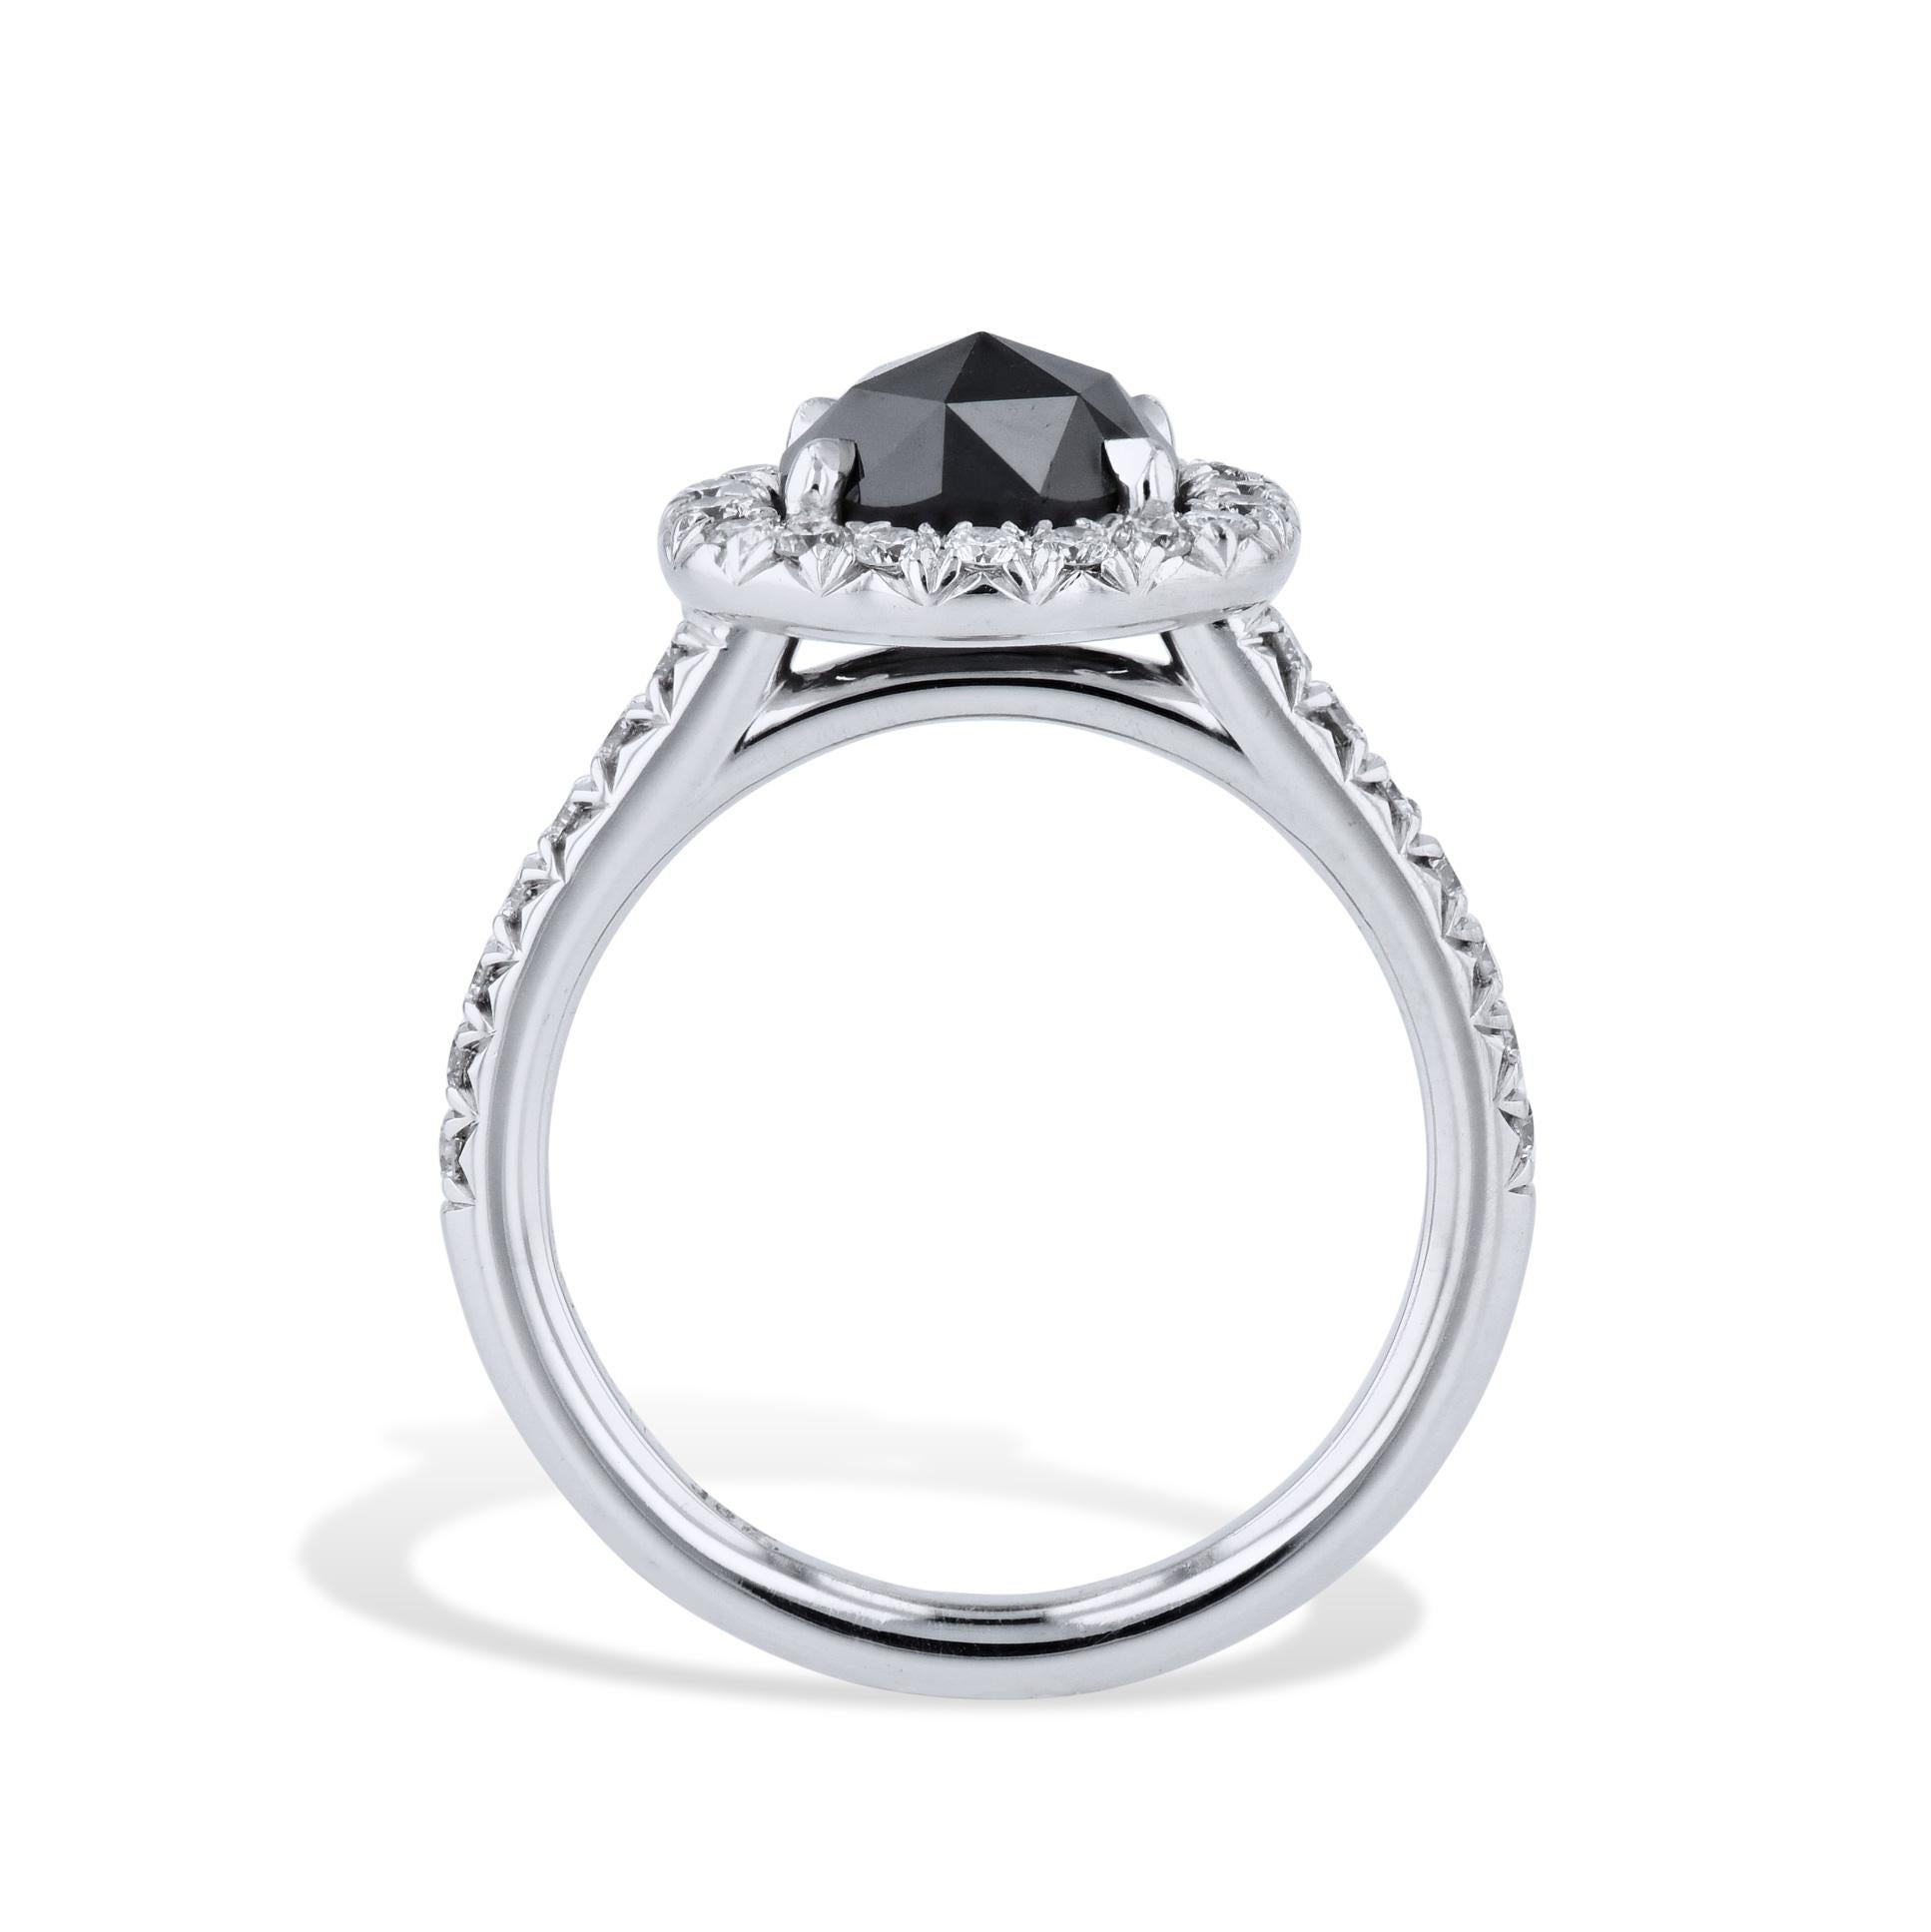 Cette magnifique bague en diamant noir est réalisée à la main en or blanc 18kt. Agrémentée de pavés de diamants autour du diamant noir et le long de la tige, elle ne manquera pas de séduire sous tous les angles. Une pièce exquise fabriquée à la